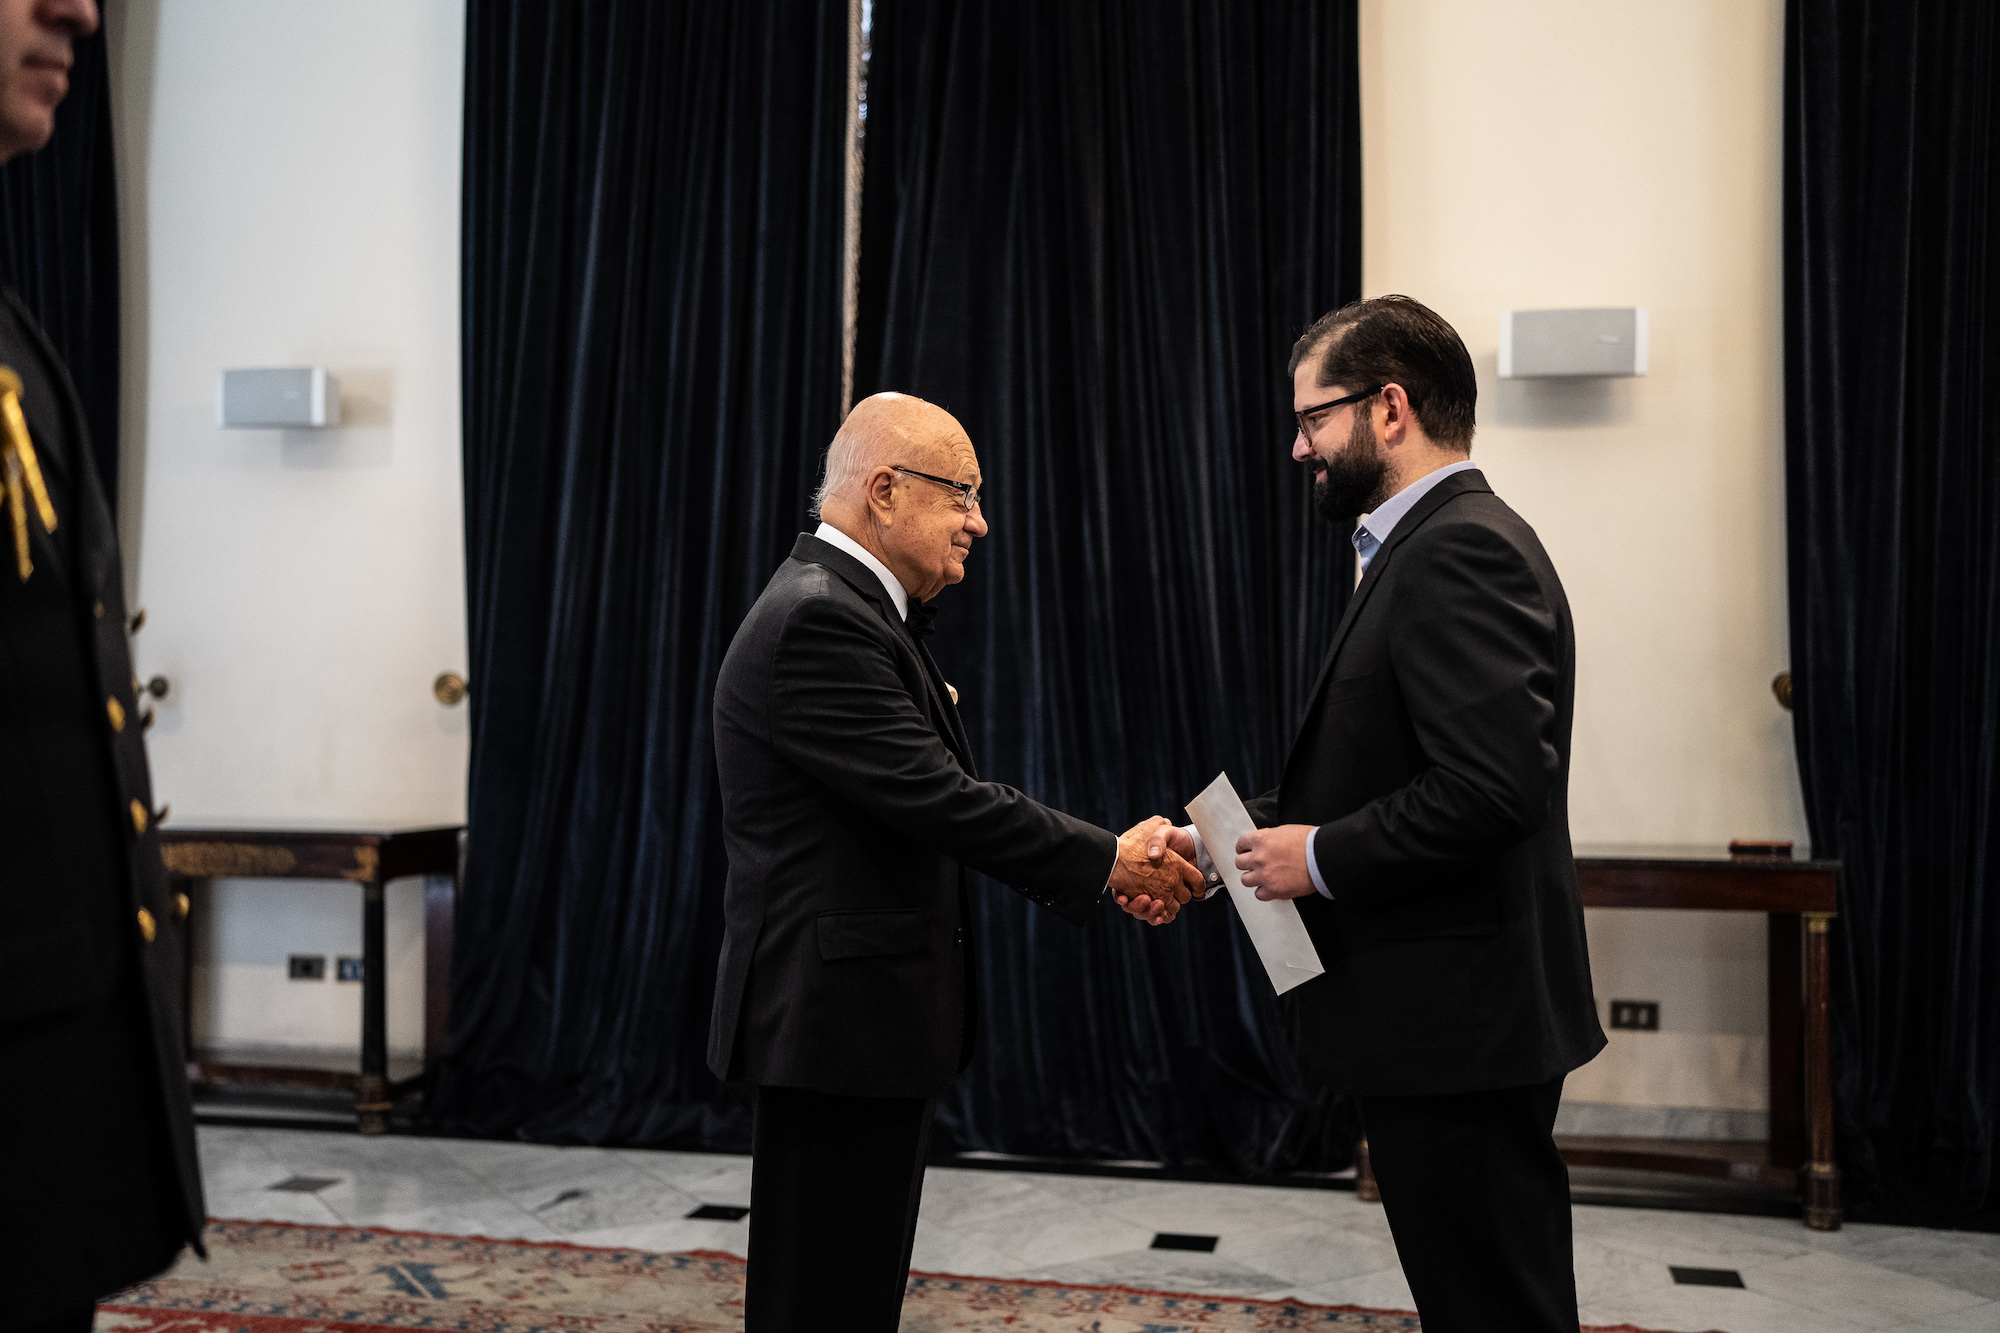 Le nouvel ambassadeur de l’Ordre souverain de Malte auprès du Chili a présenté ses lettres de creance